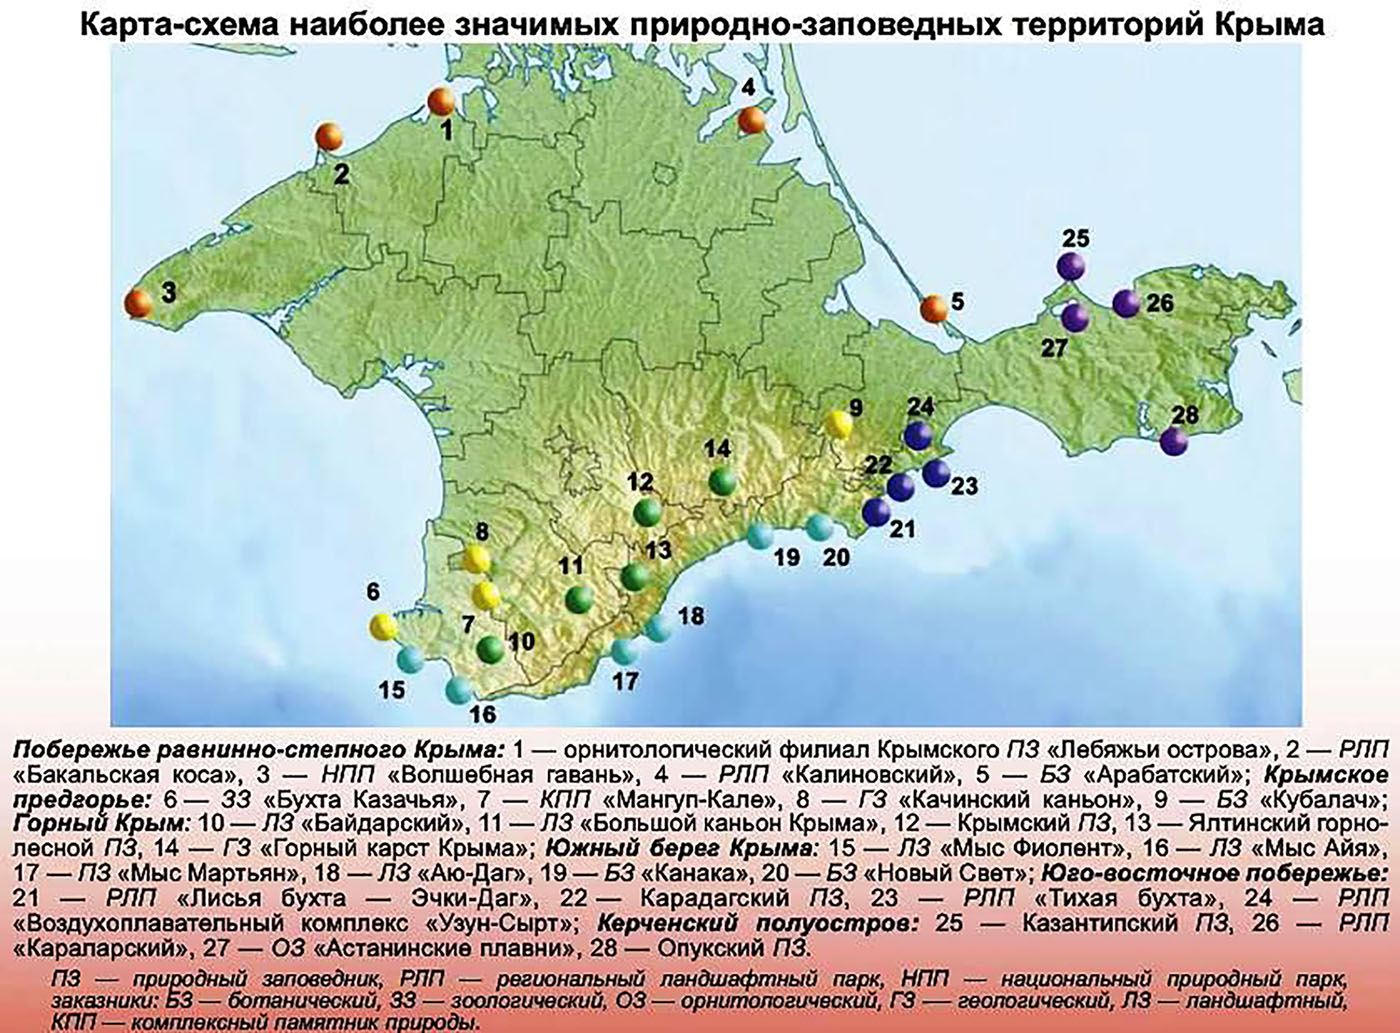 Заповедники Крыма на карте